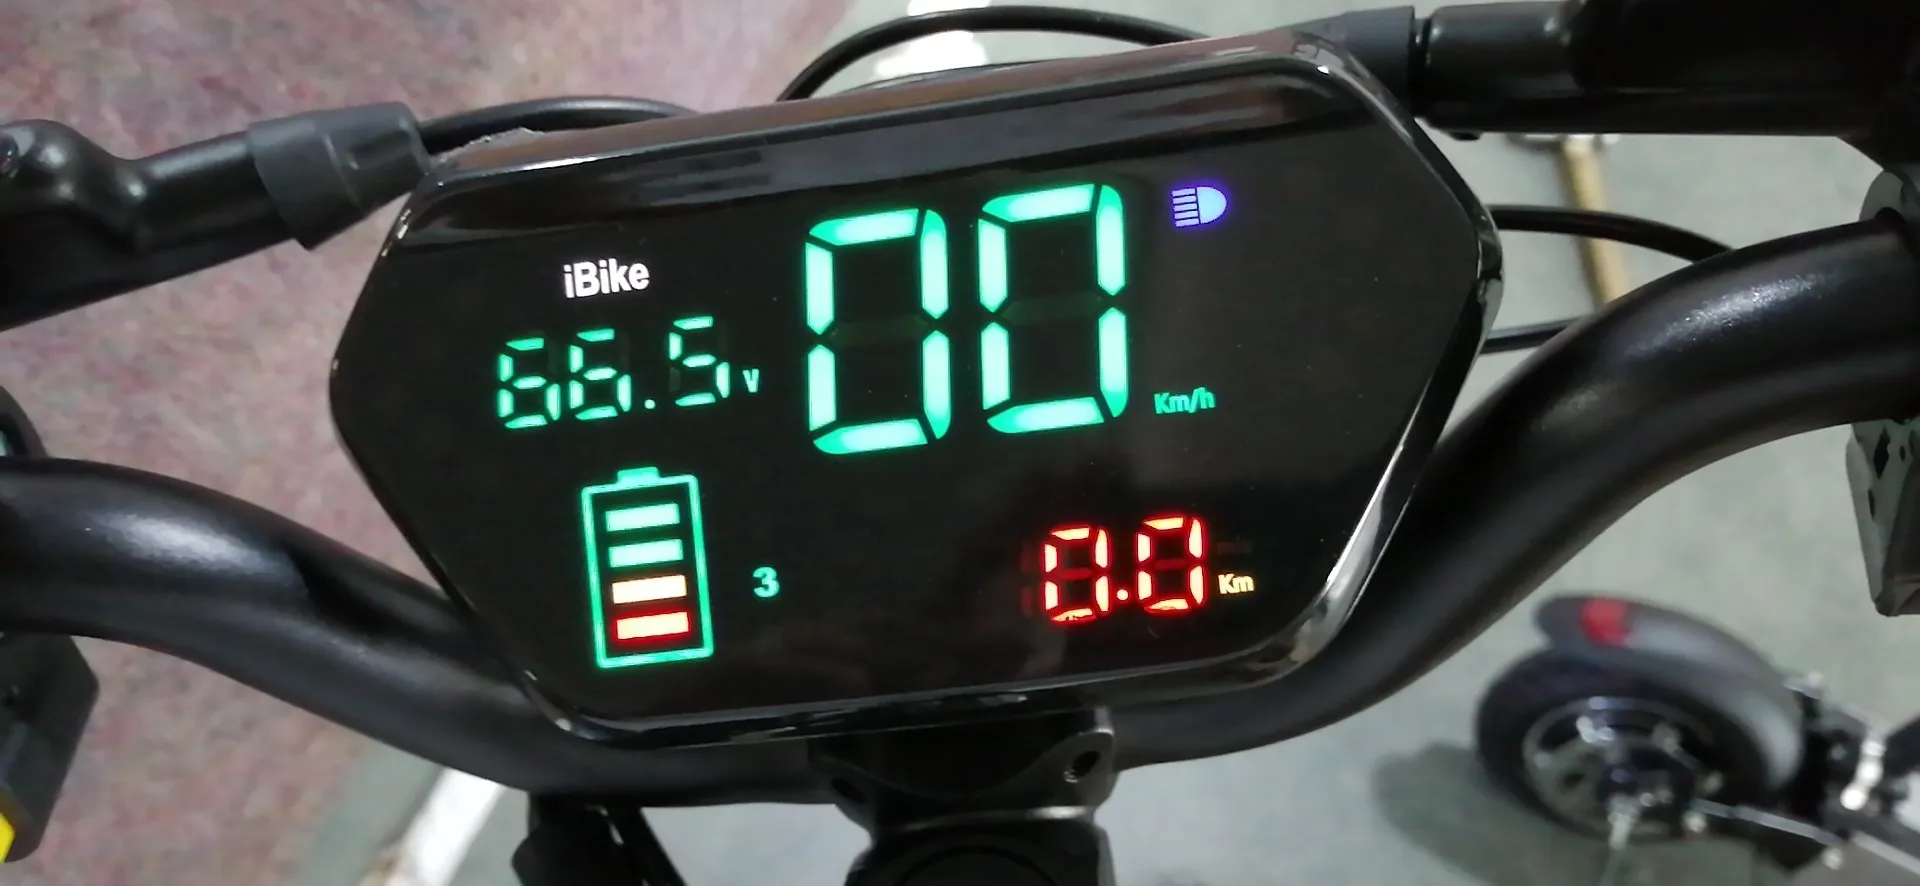 Электрический скутер с ЖК-дисплеем 60 в Интеллектуальный ЖК-дисплей ebike ЖК велосипедный пульт управления Водонепроницаемая опция электрический самокат